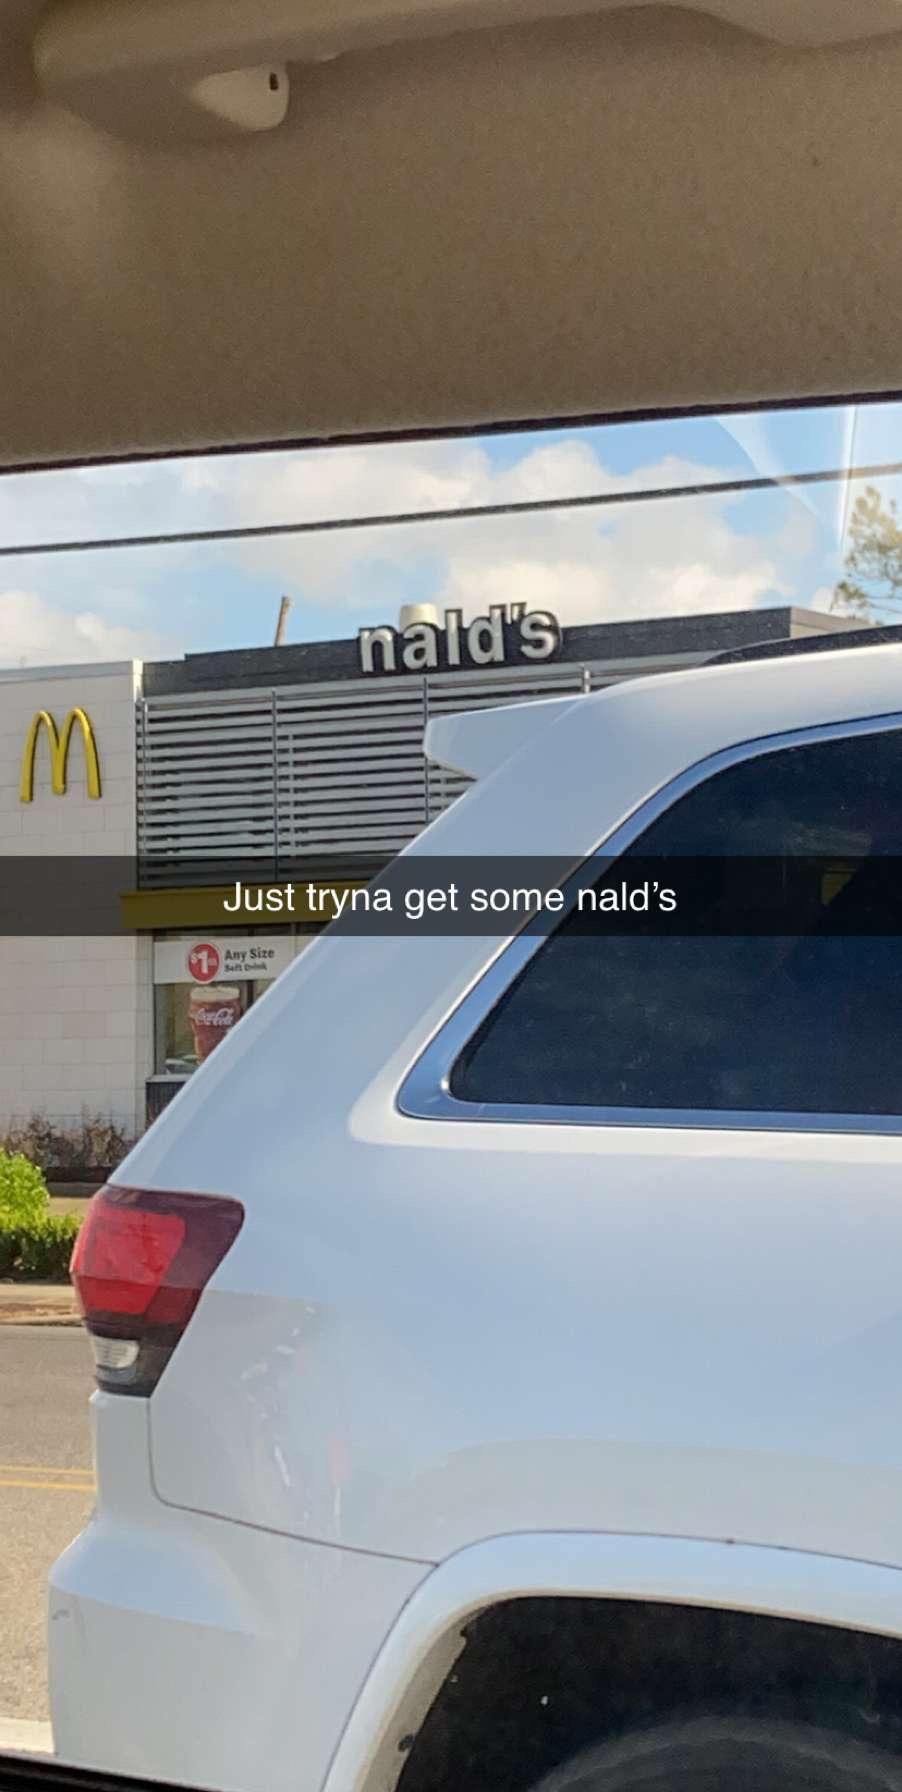 Ah, yes, Nald’s.